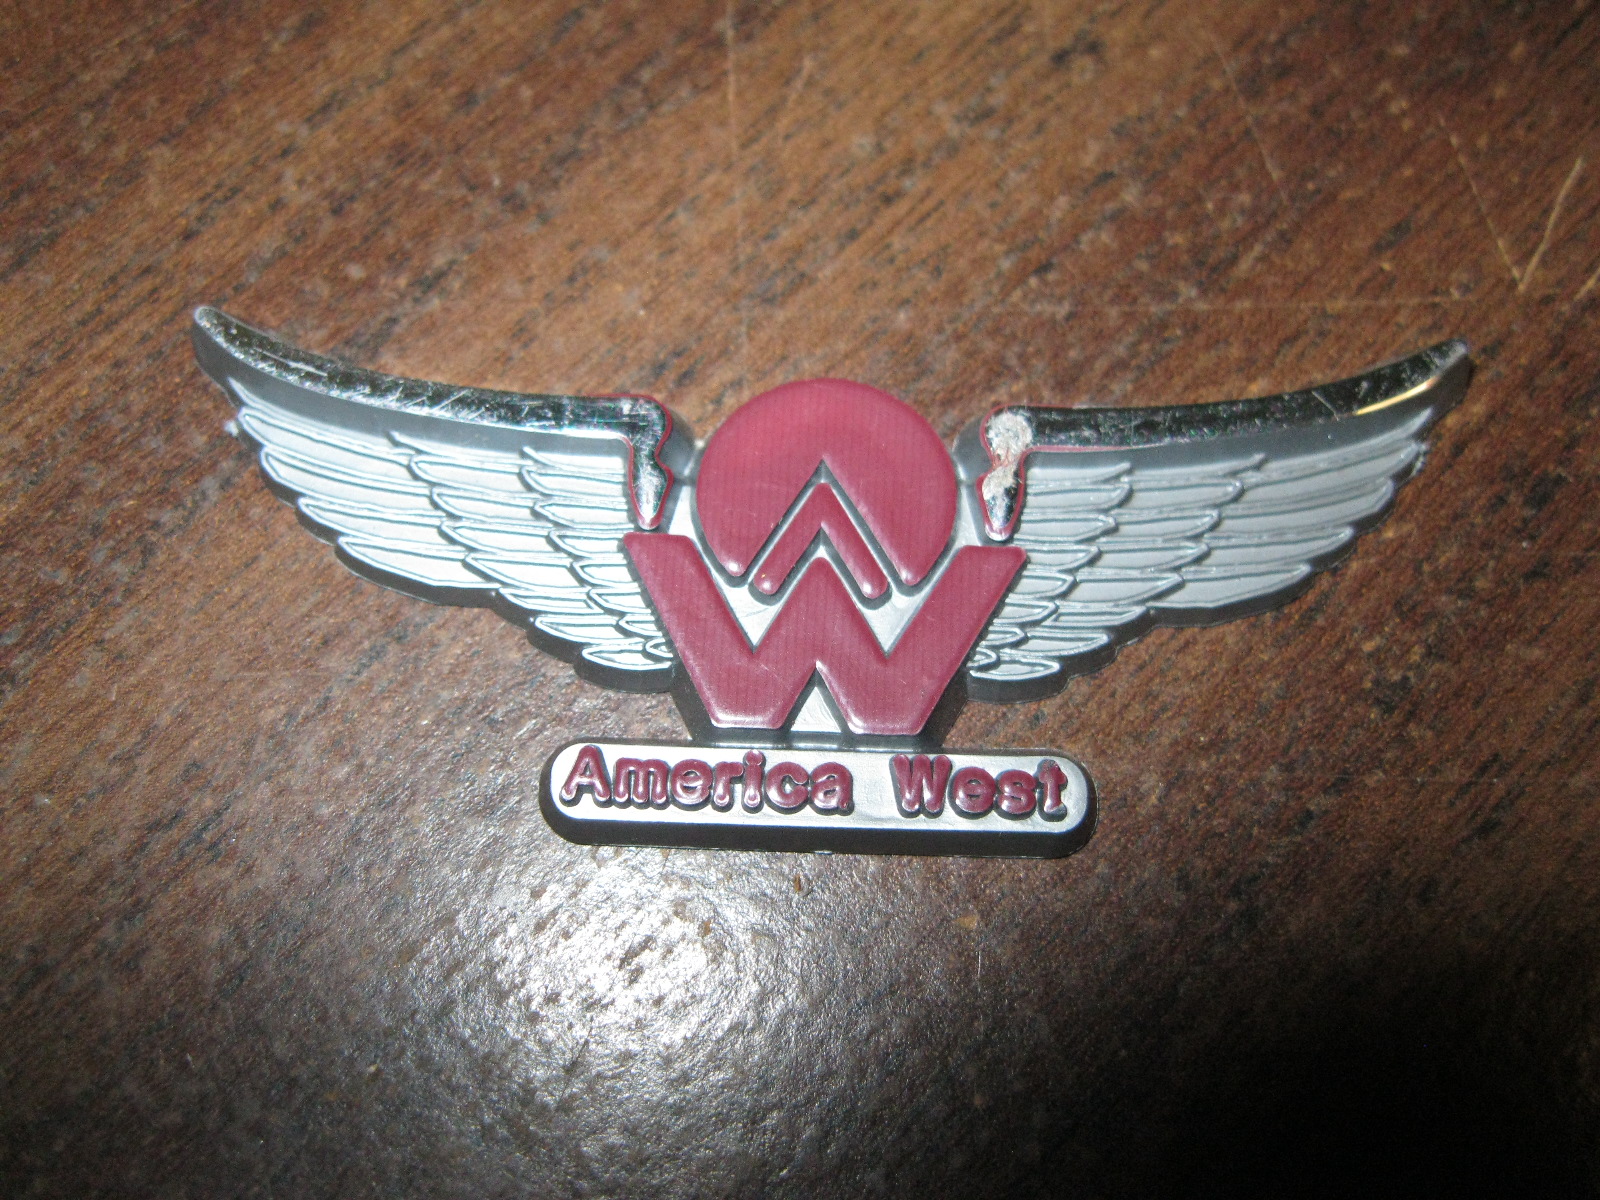 America West airlines plastic kiddie wings